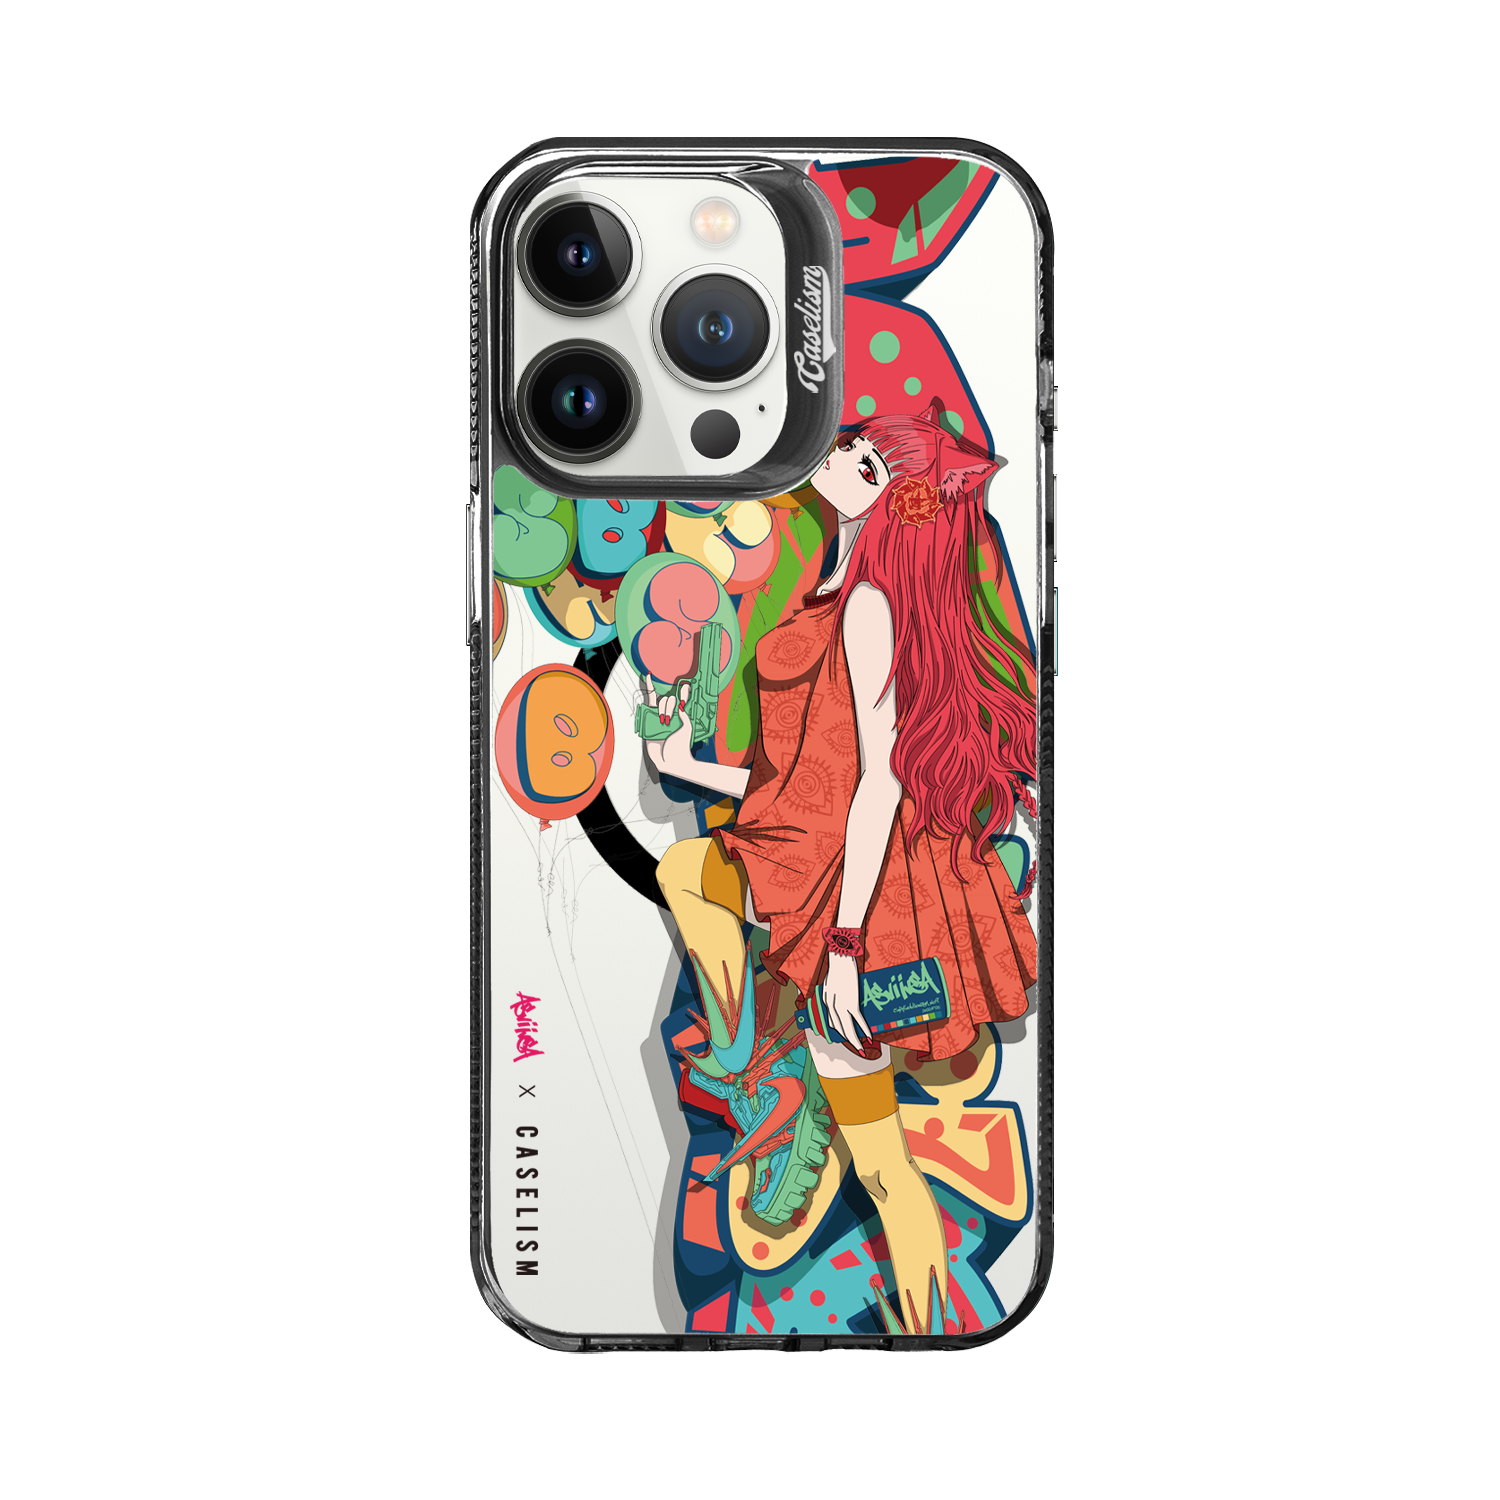 ASVI012 - ColorLite Case for iPhone